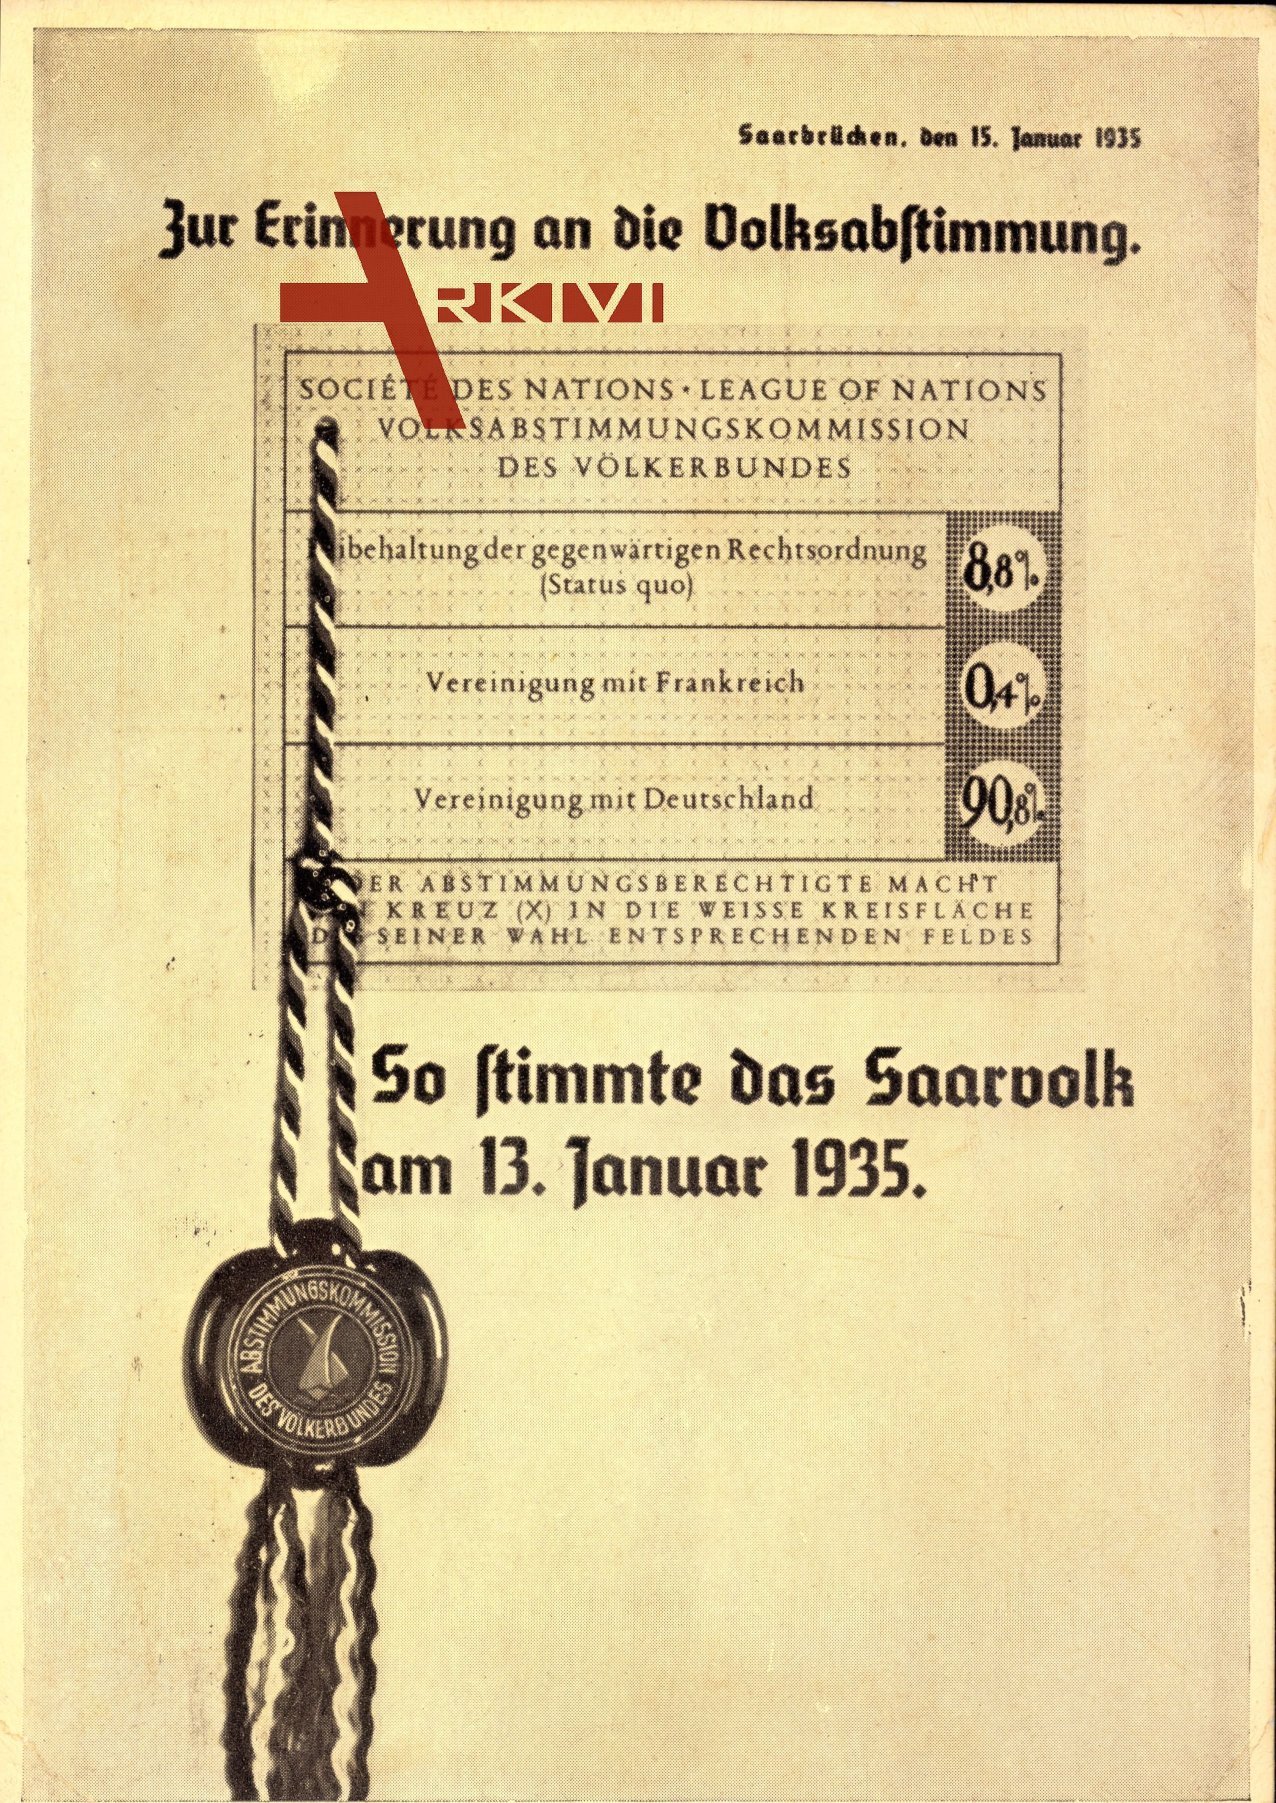 Saarabstimmung 1935, Vereinigung mit Deutschland, 90 Prozent, 13 Januar